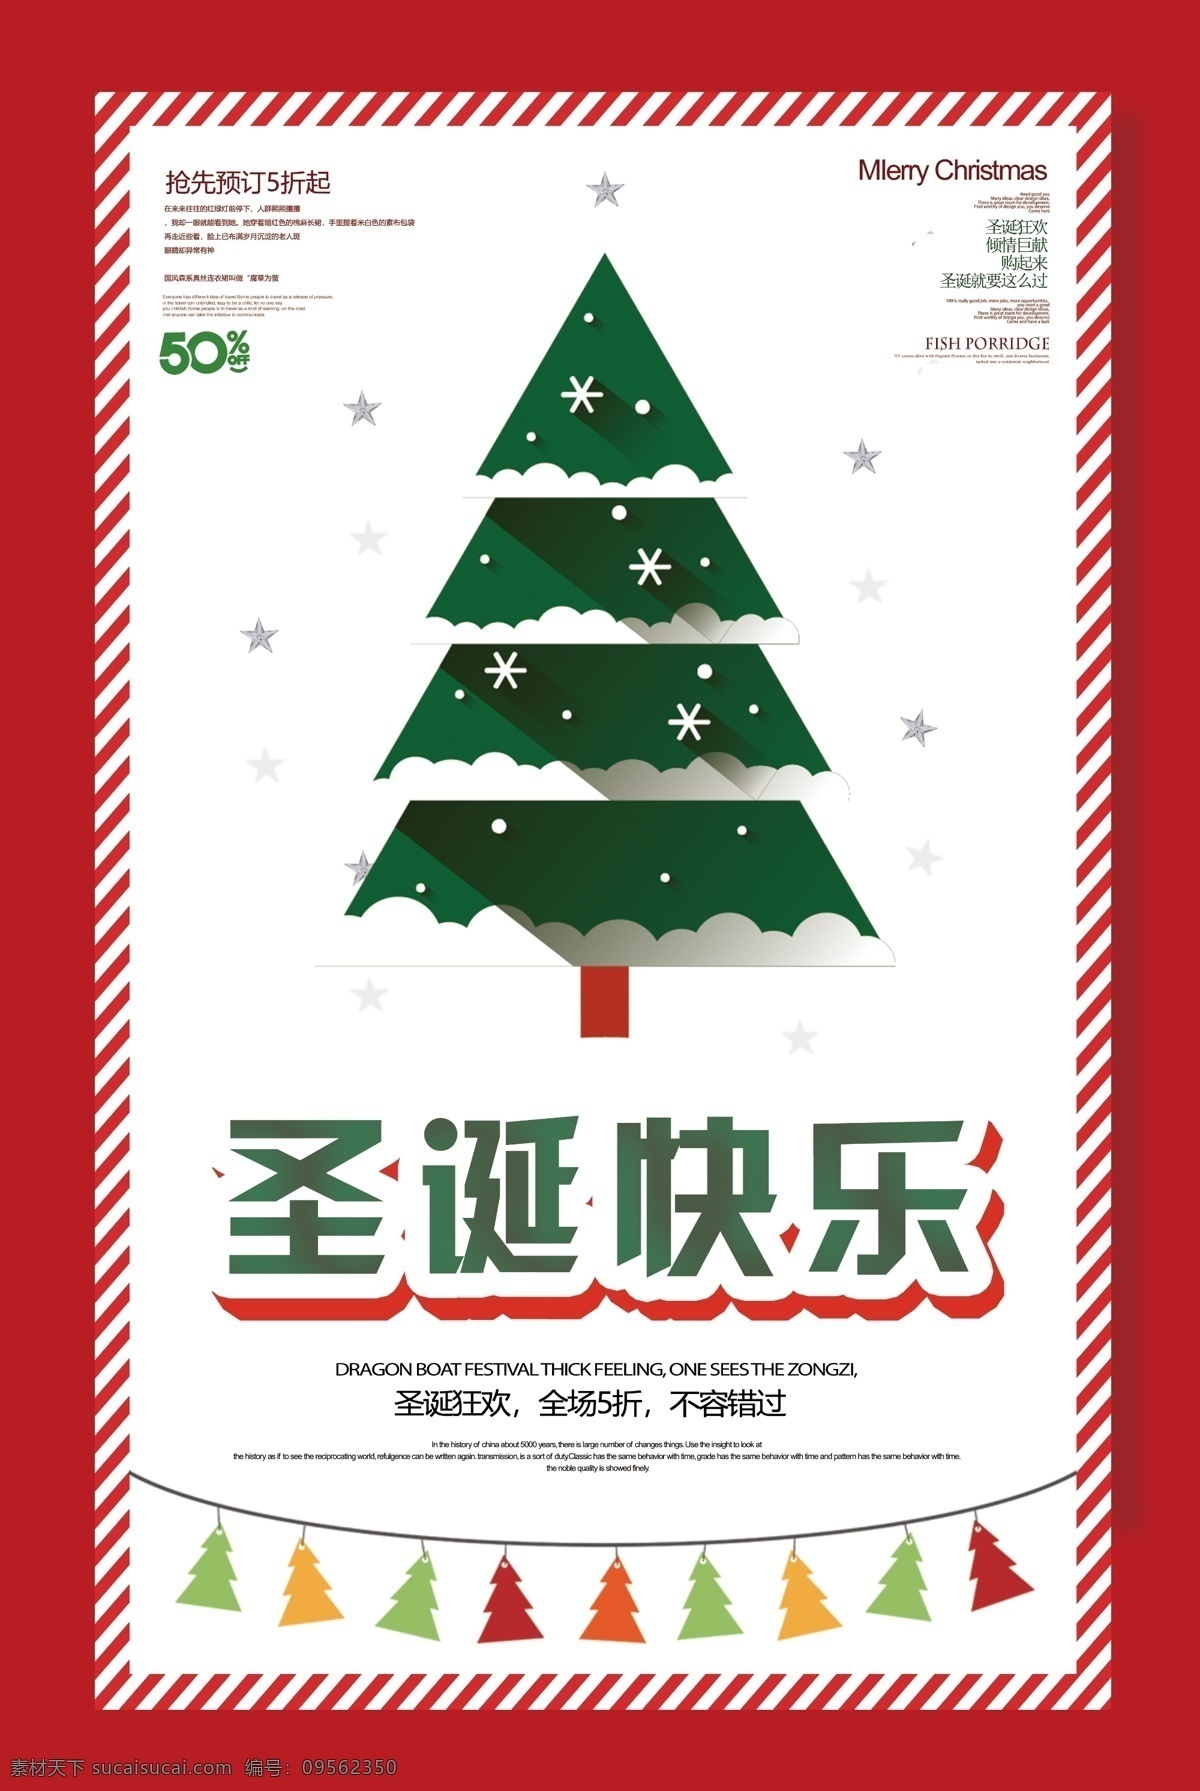 创意 圣诞快乐 促销 海报 圣诞树 圣诞 节日海报 绿色圣诞树 圣诞狂欢 打折